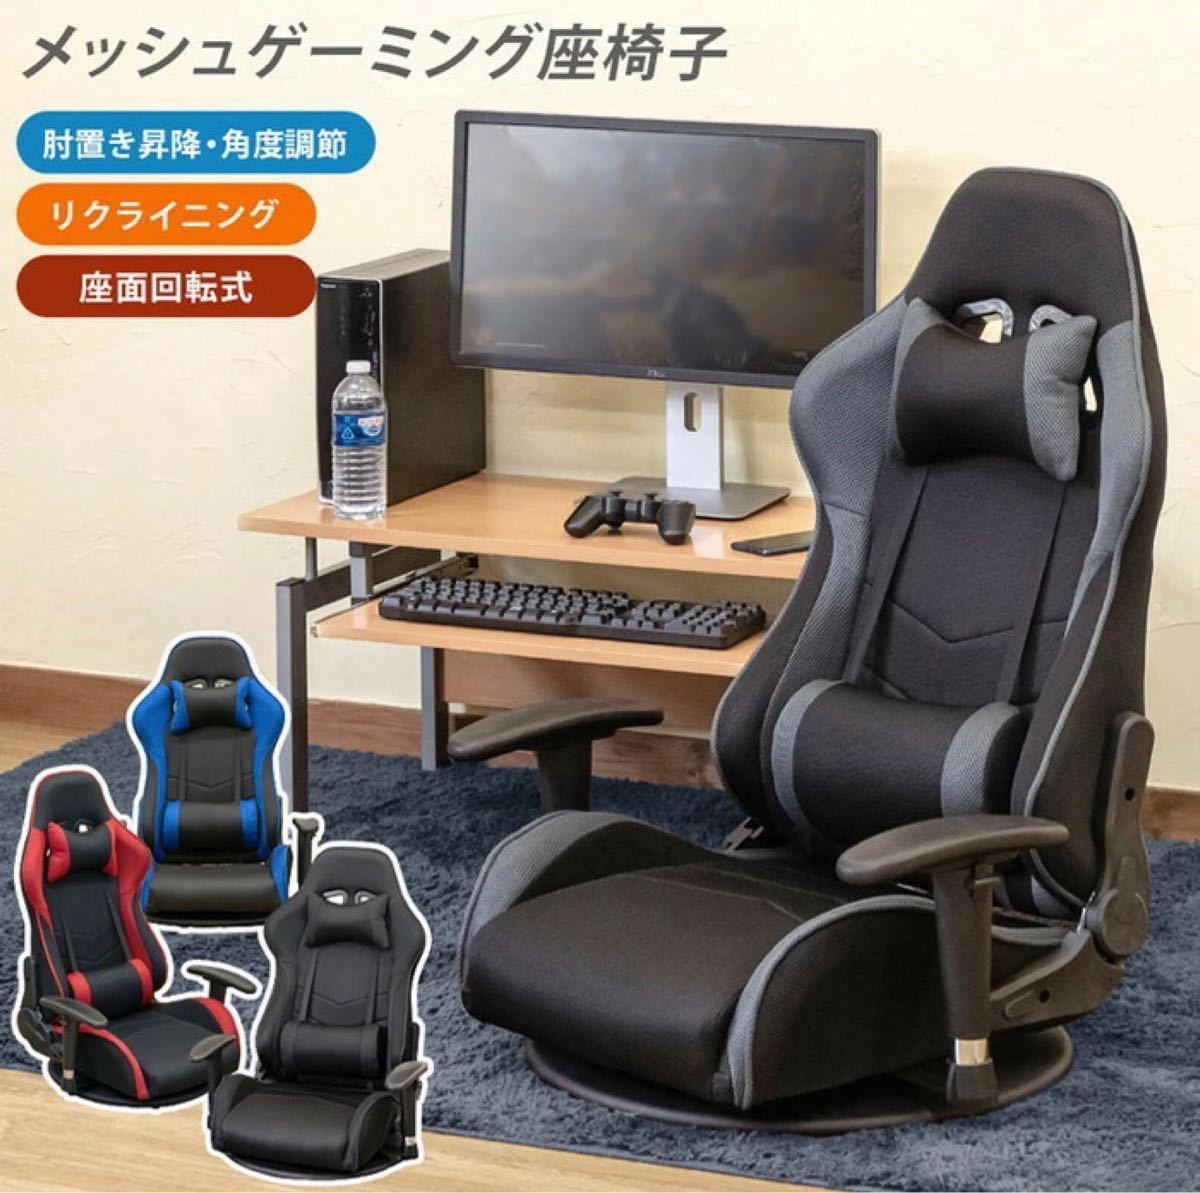 【送料無料】ゲーミングチェア イス チェア 座椅子 新品未使用_画像1